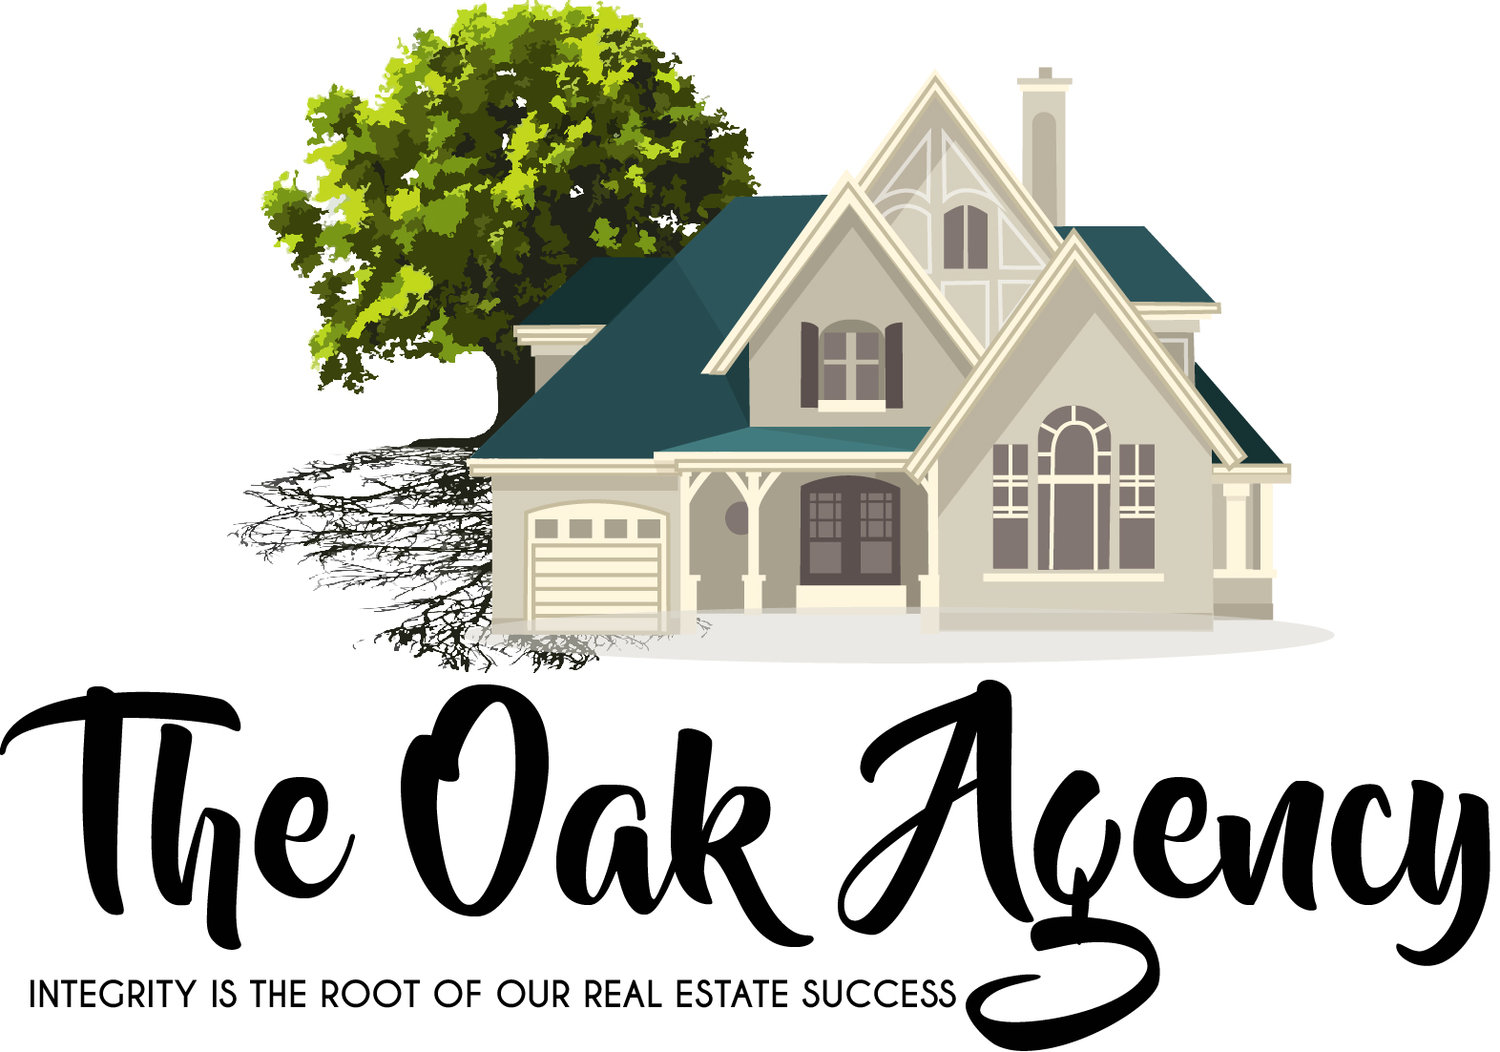 The Oak Agency